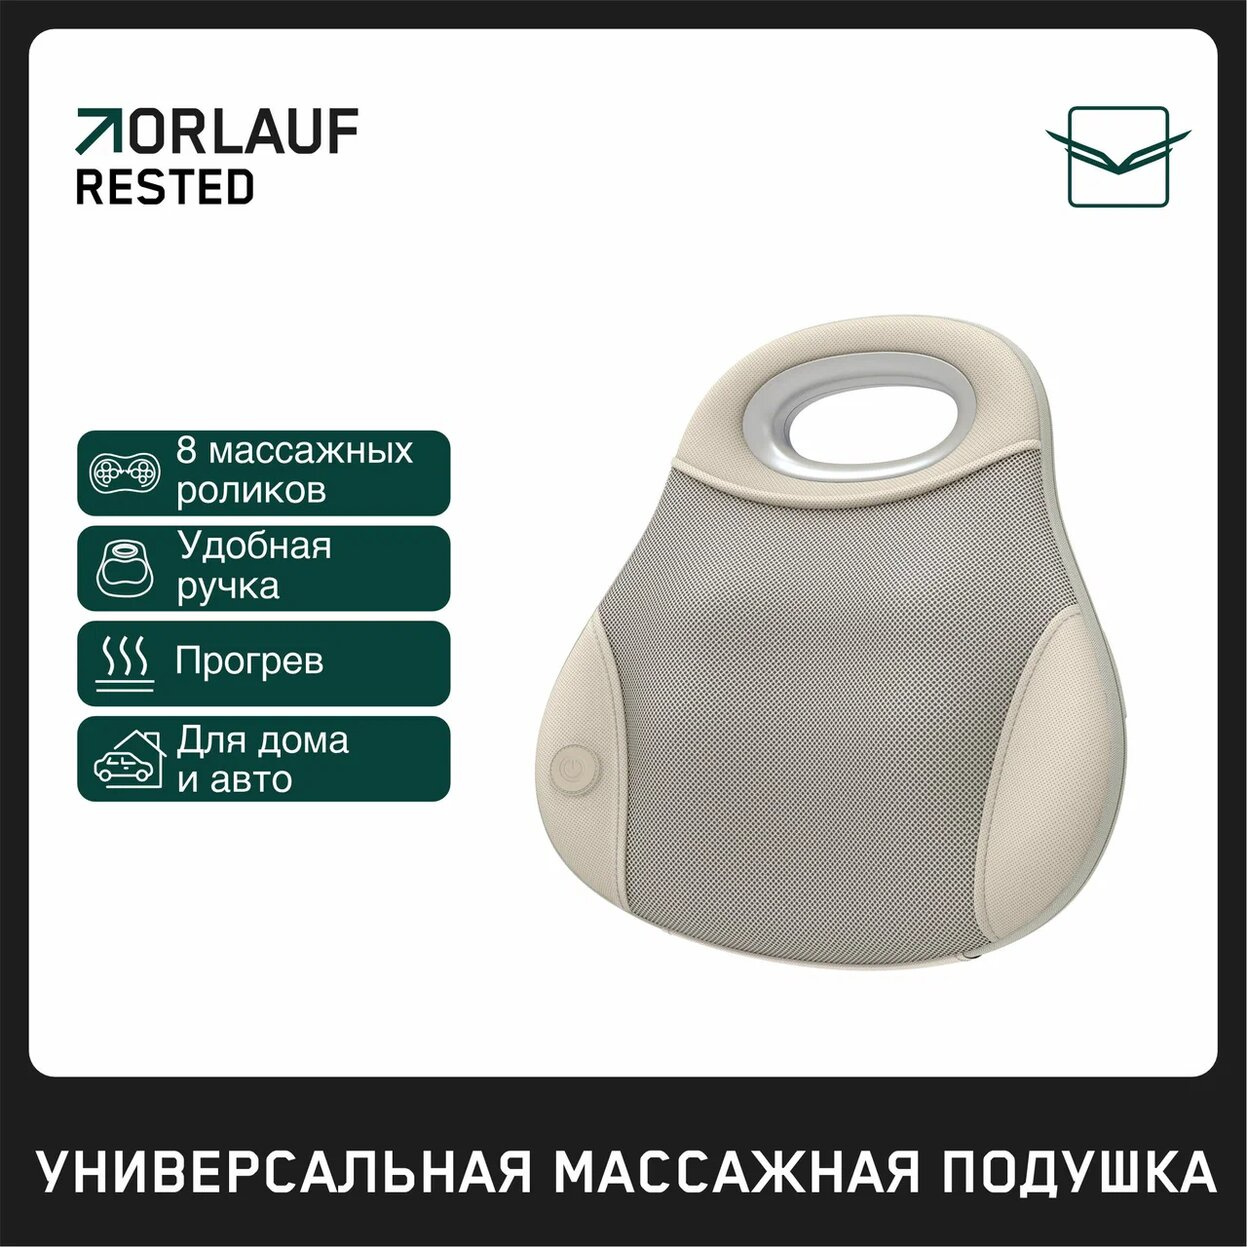 Orlauf Rested из каталога устройств для массажа в Москве по цене 11900 ₽